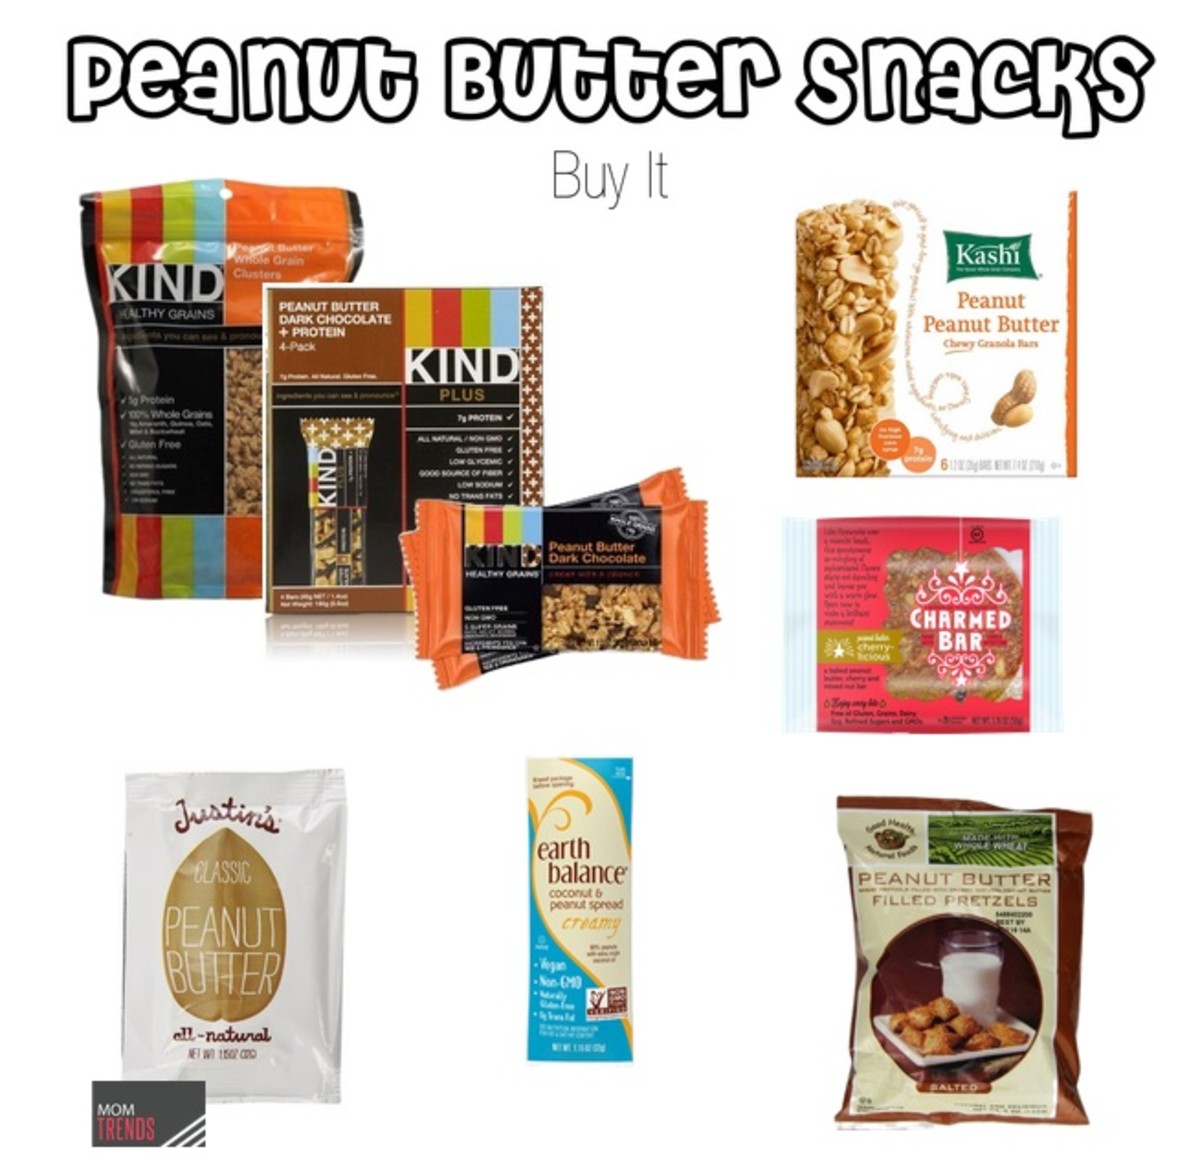 Peanut Butter Snacks Buy It1